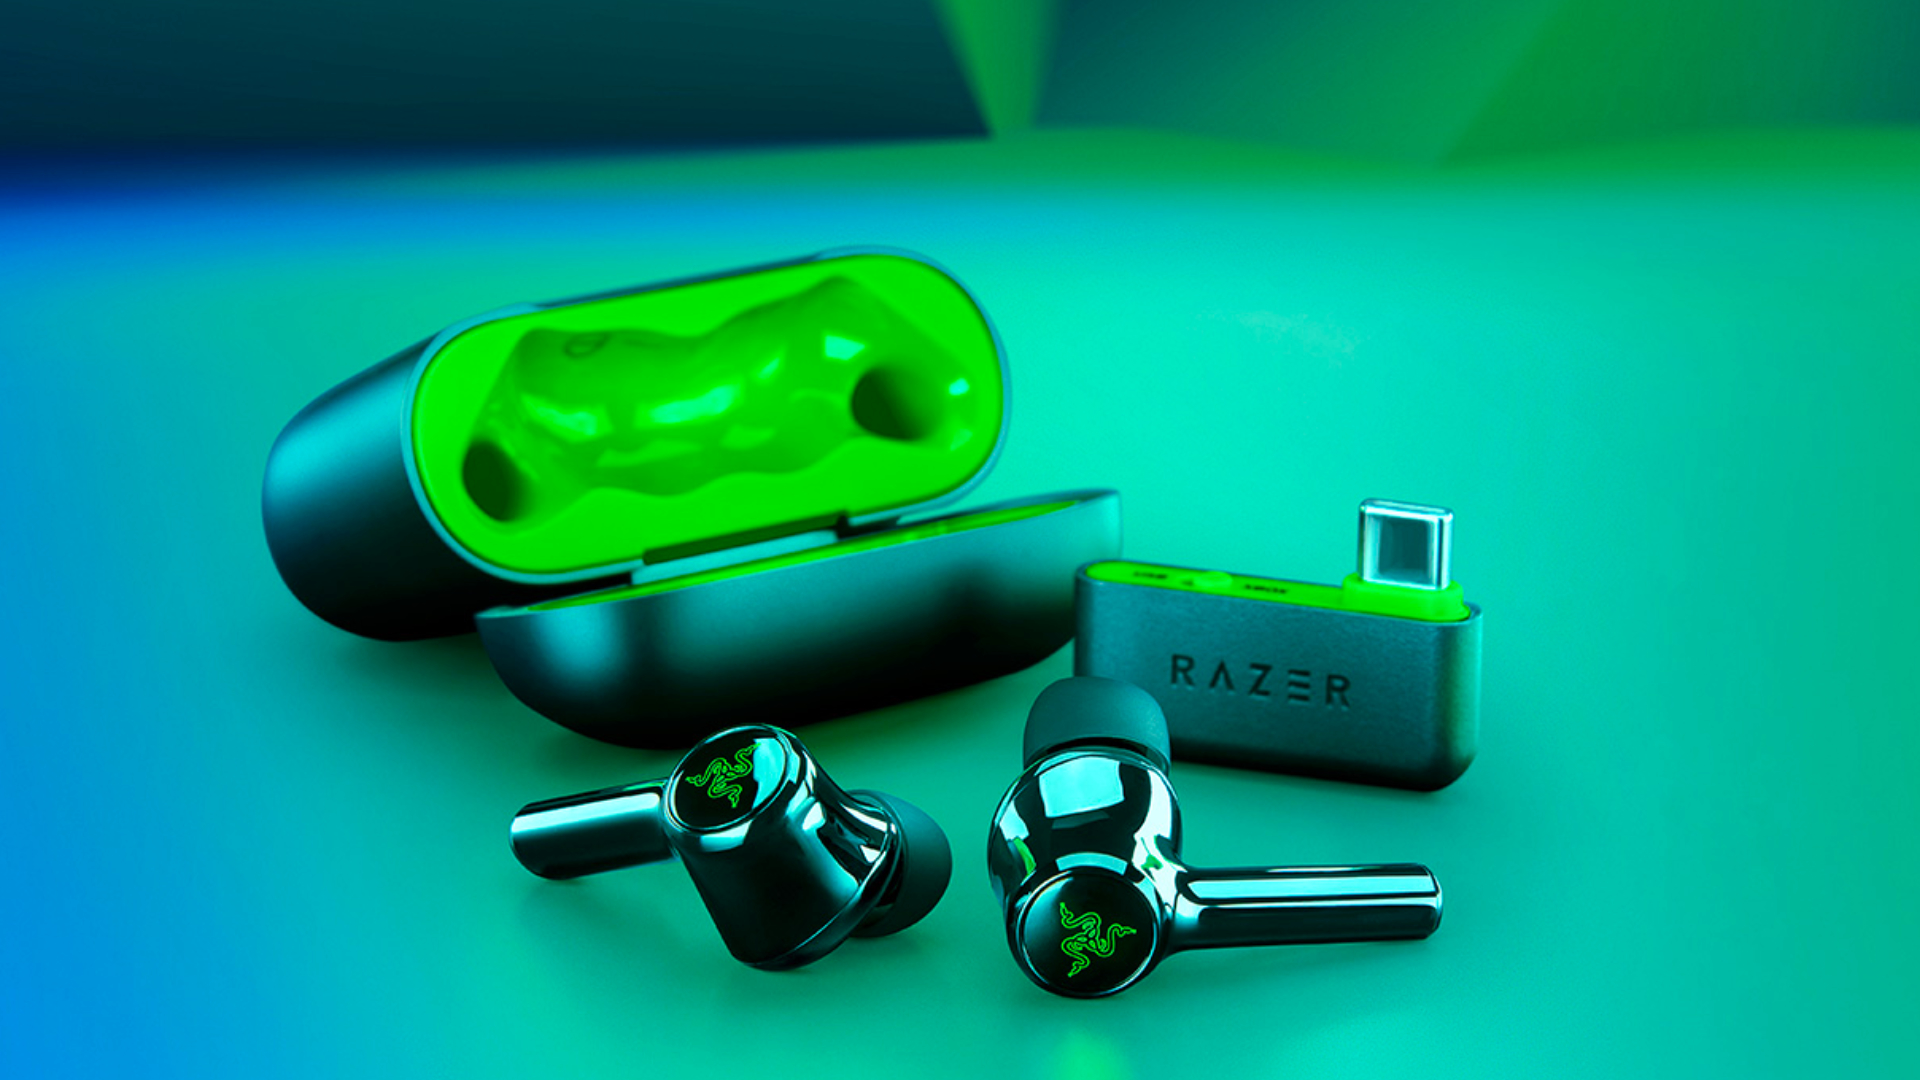 Test Razer Hammerhead HyperSpeed : d'excellents écouteurs sans fil pour la  PS5